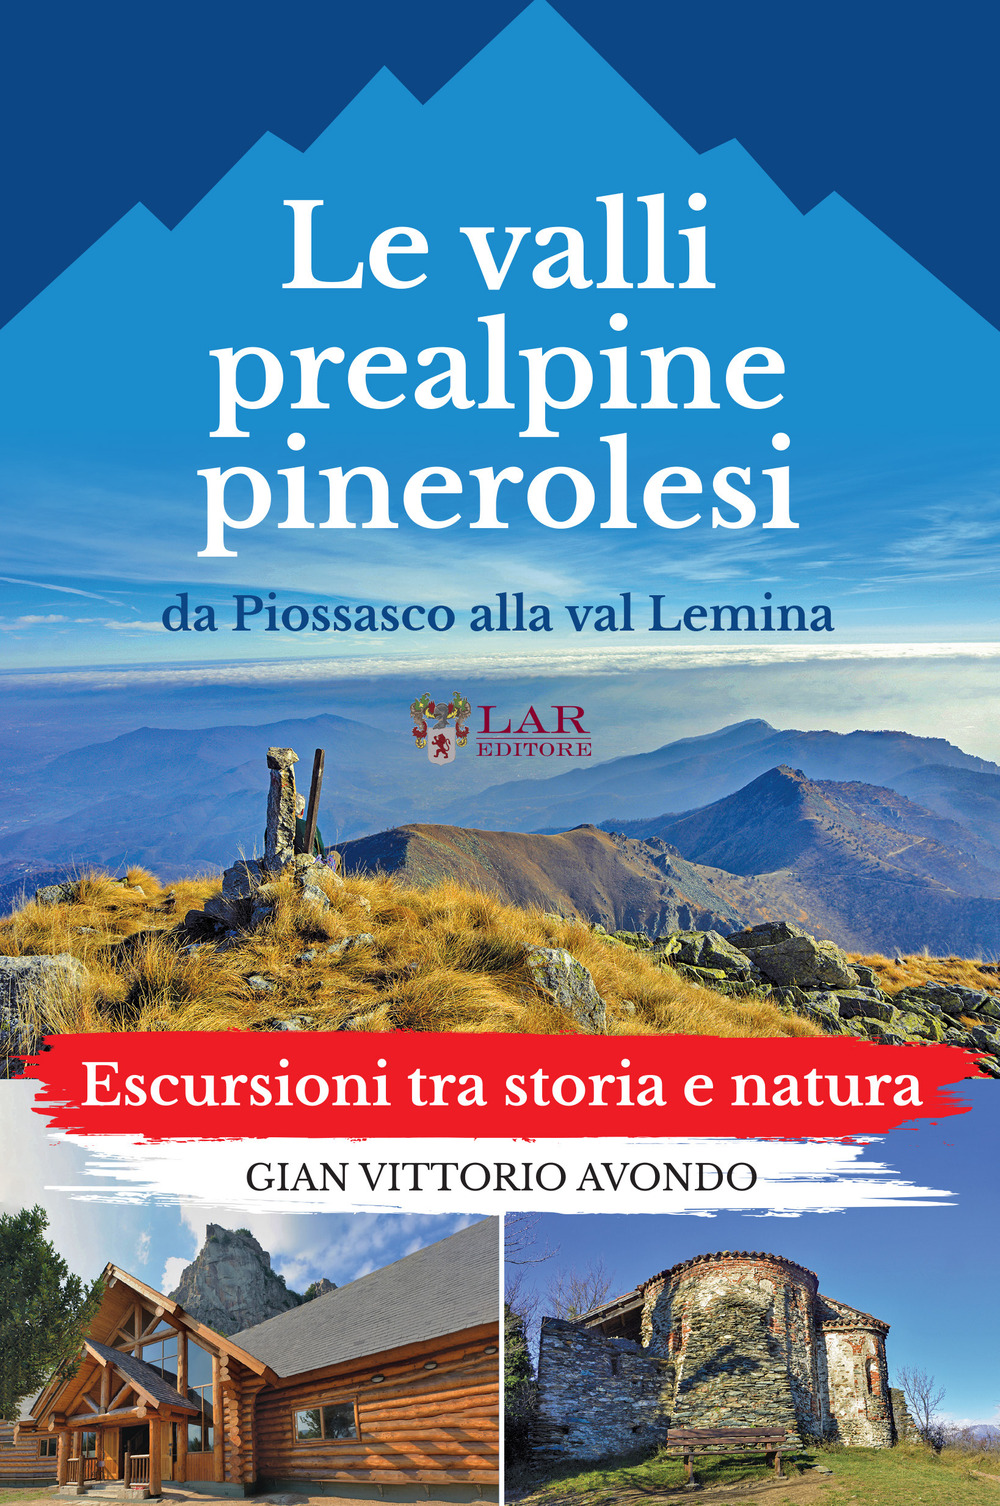 La valli prealpine pinerolesi da Piossasco alla val Lemina. Escursioni tra storia e natura